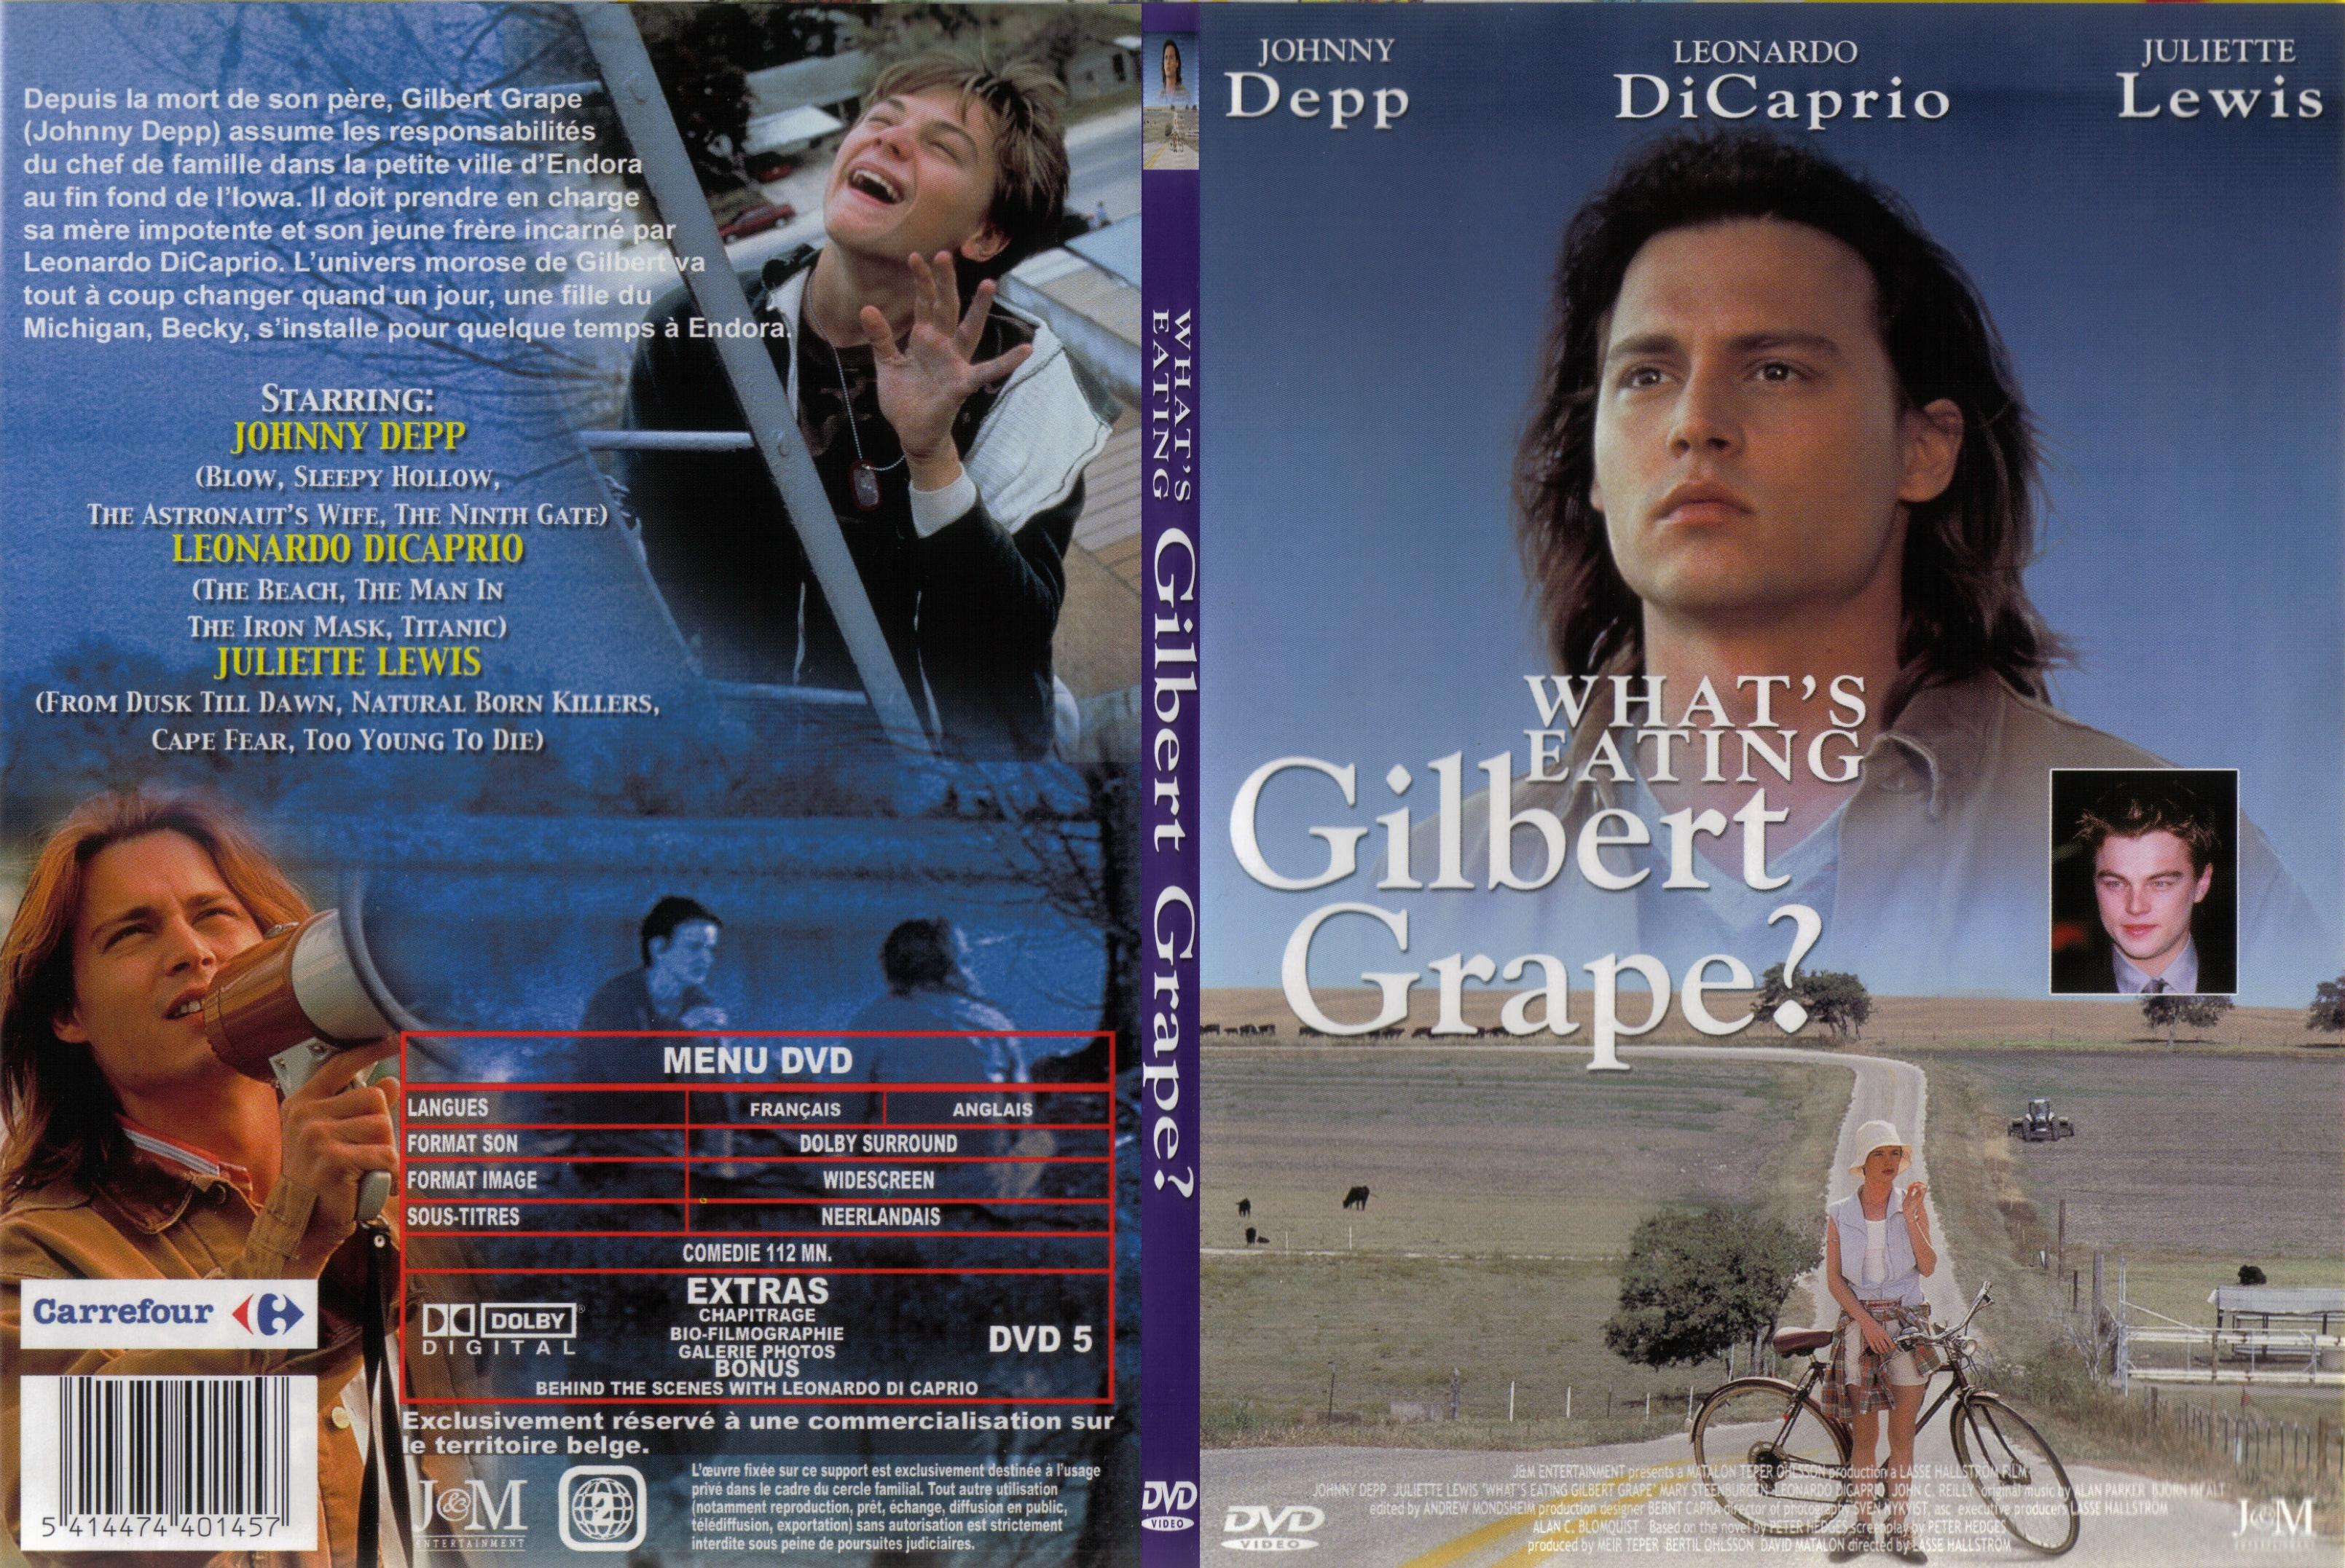 Jaquette DVD Gilbert Grape - SLIM